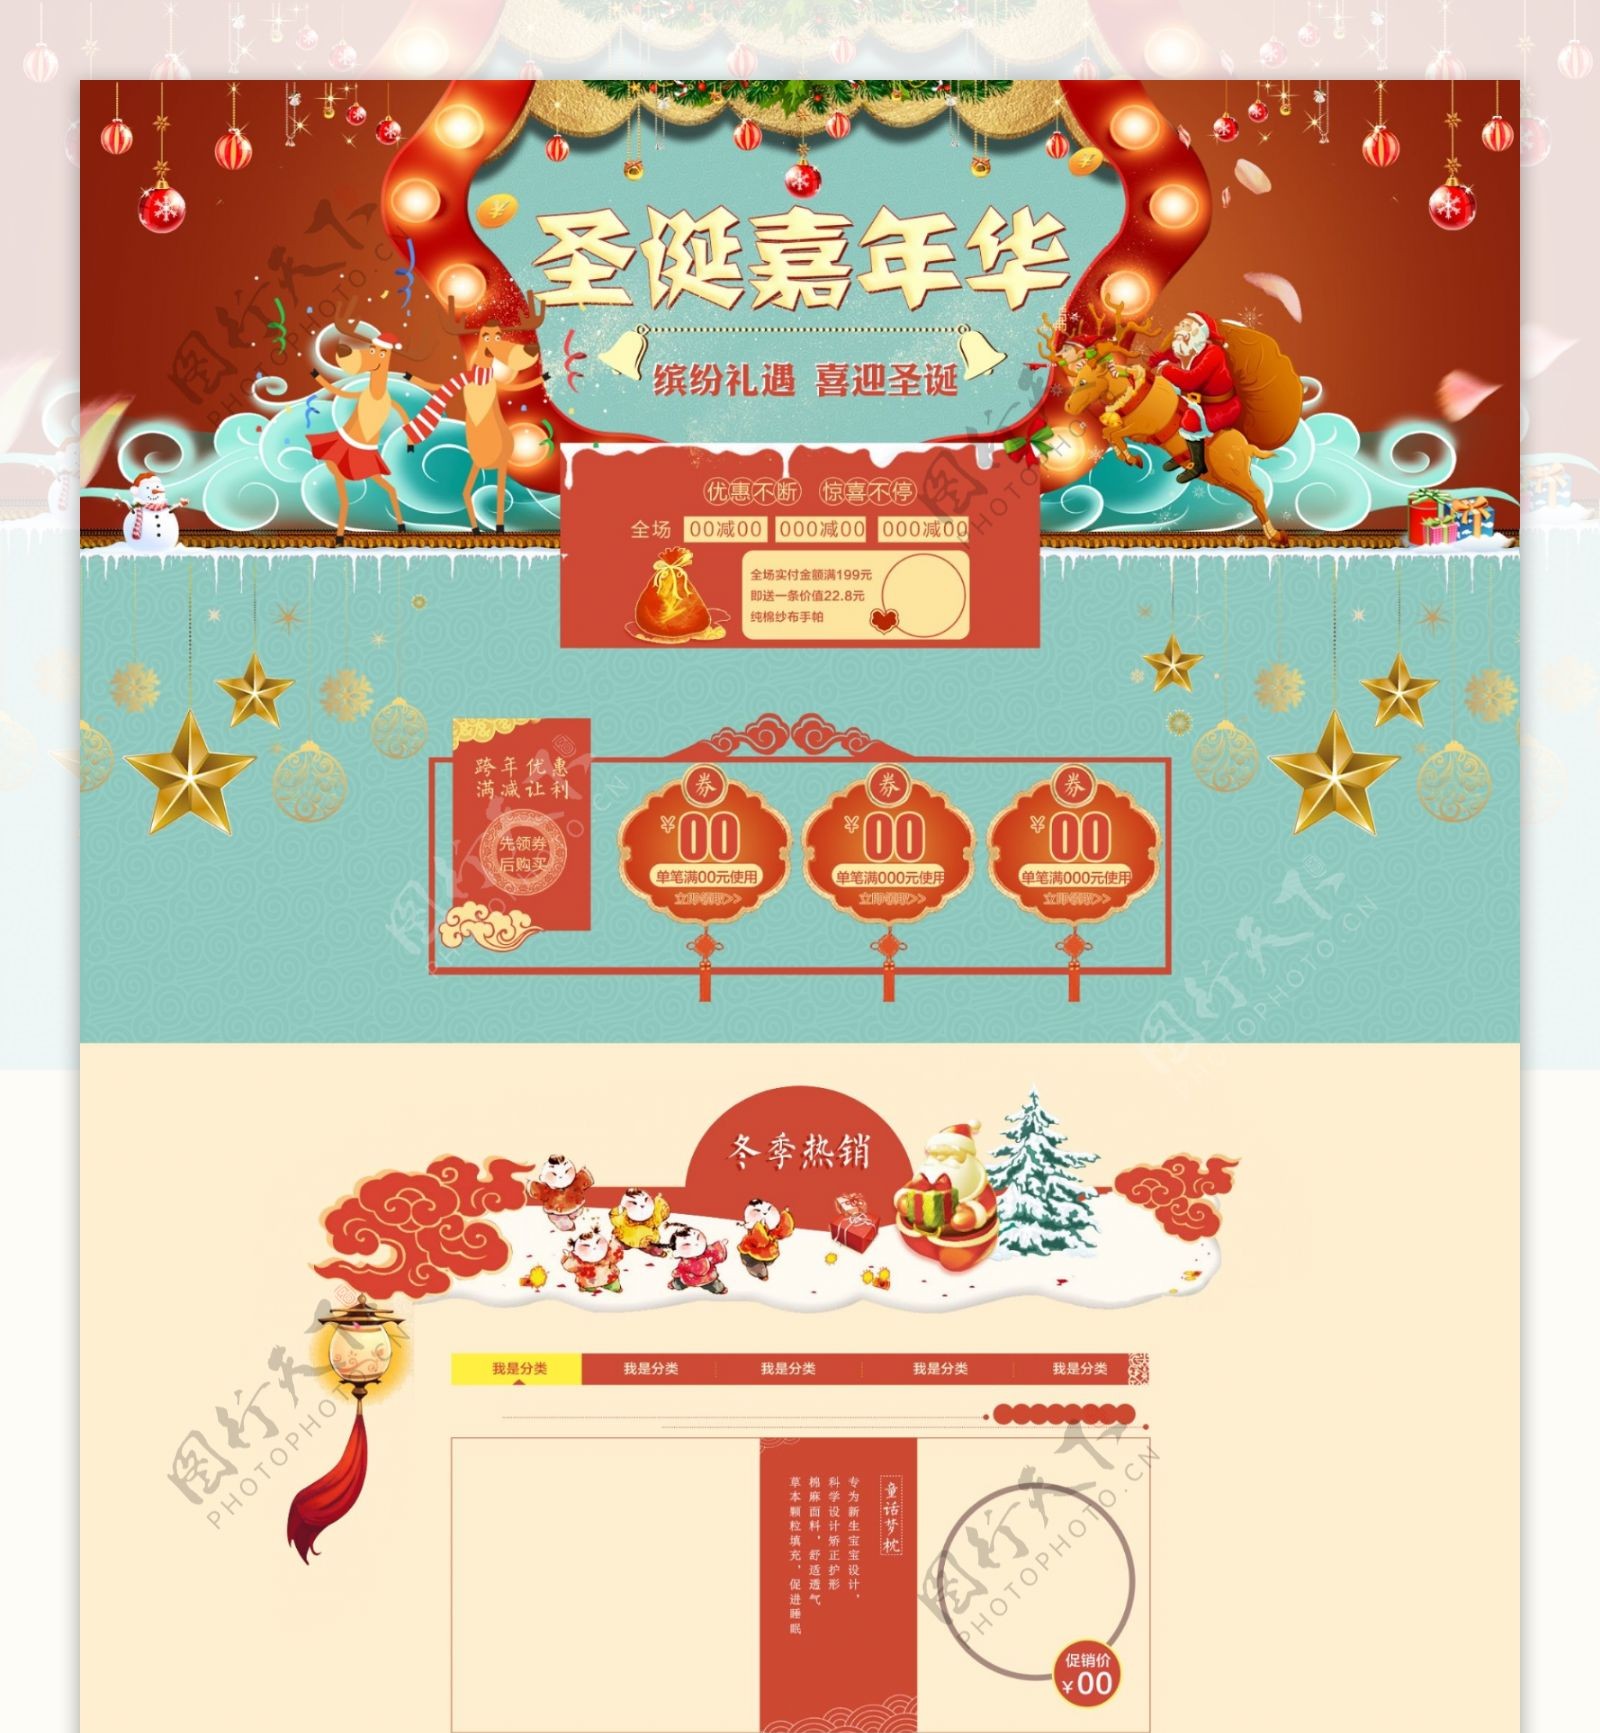 圣诞节首页模板促销活动喜迎双旦新年